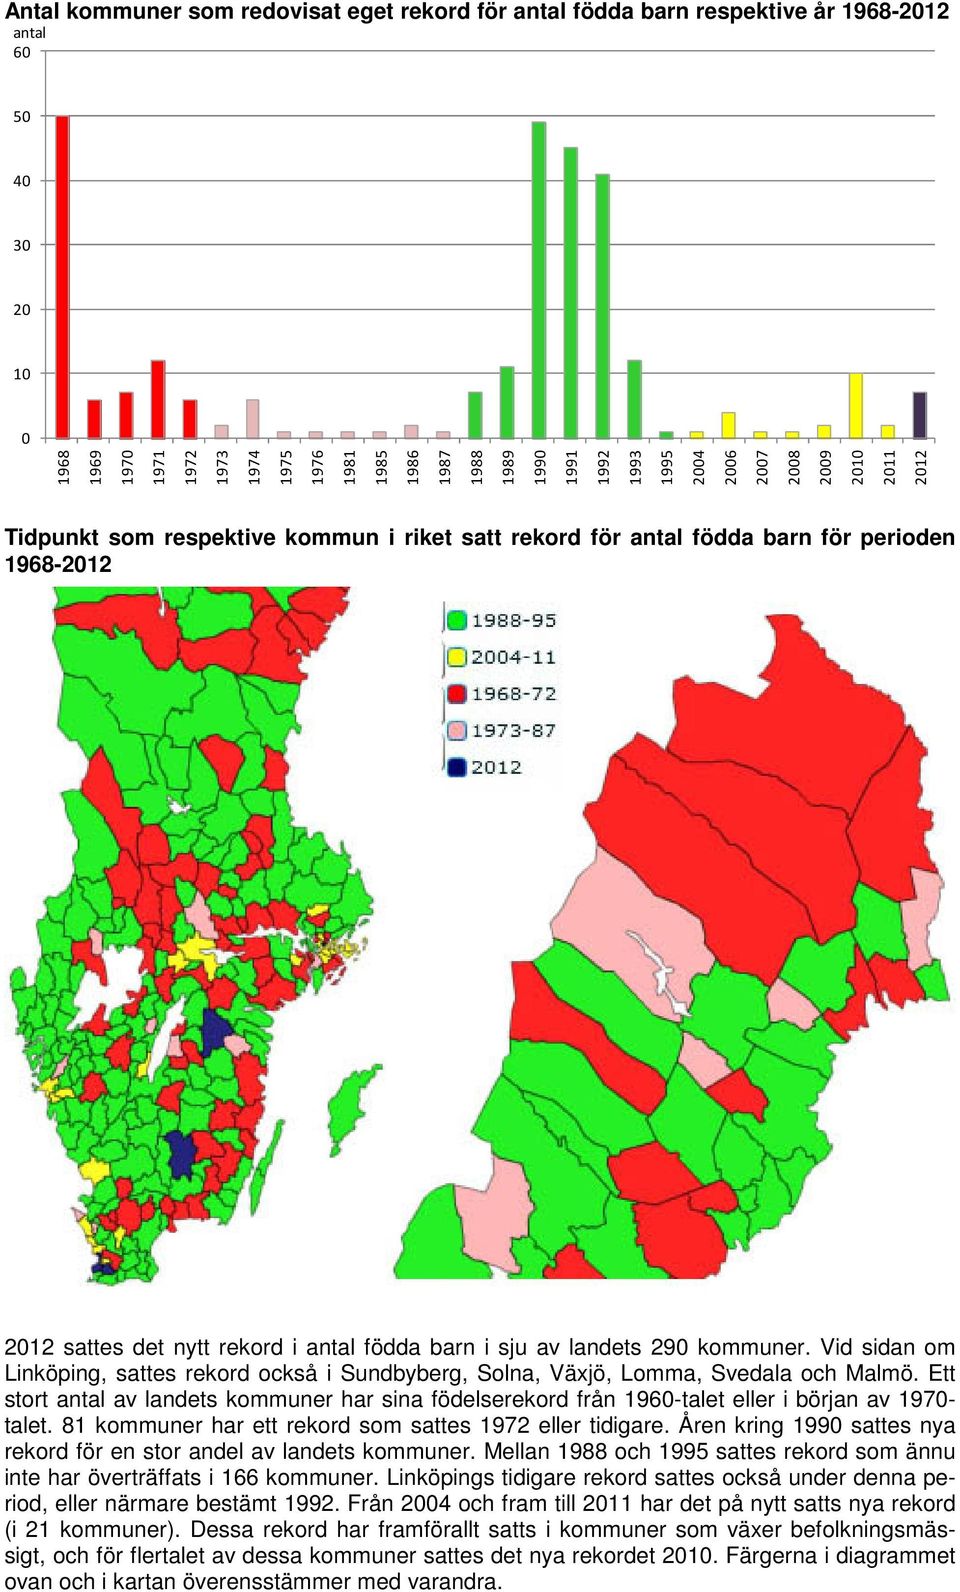 Vid sidan om Linköping, sattes rekord också i Sundbyberg, Solna, Växjö, Lomma, Svedala och Malmö. Ett stort av landets kommuner har sina födelserekord från 196-talet eller i början av - talet.